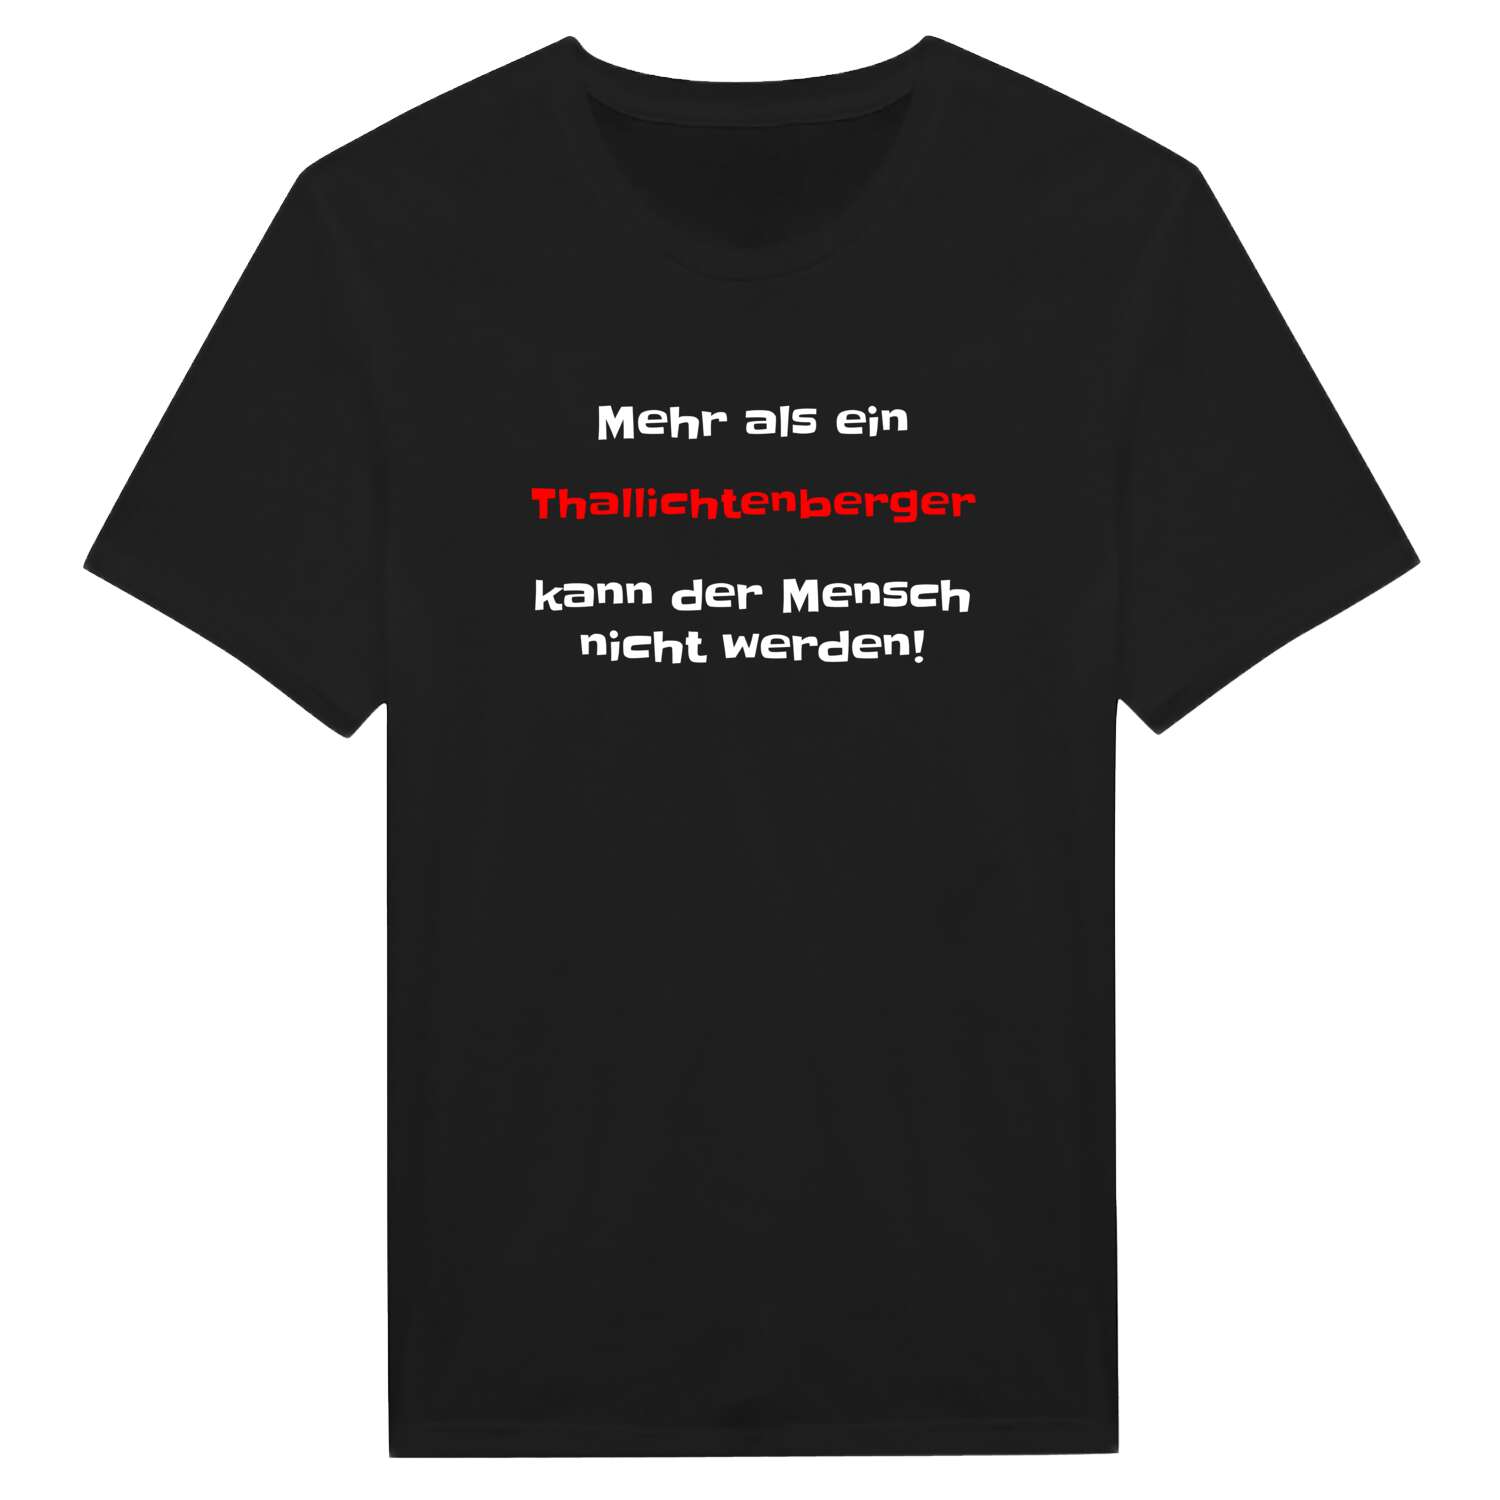 Thallichtenberg T-Shirt »Mehr als ein«